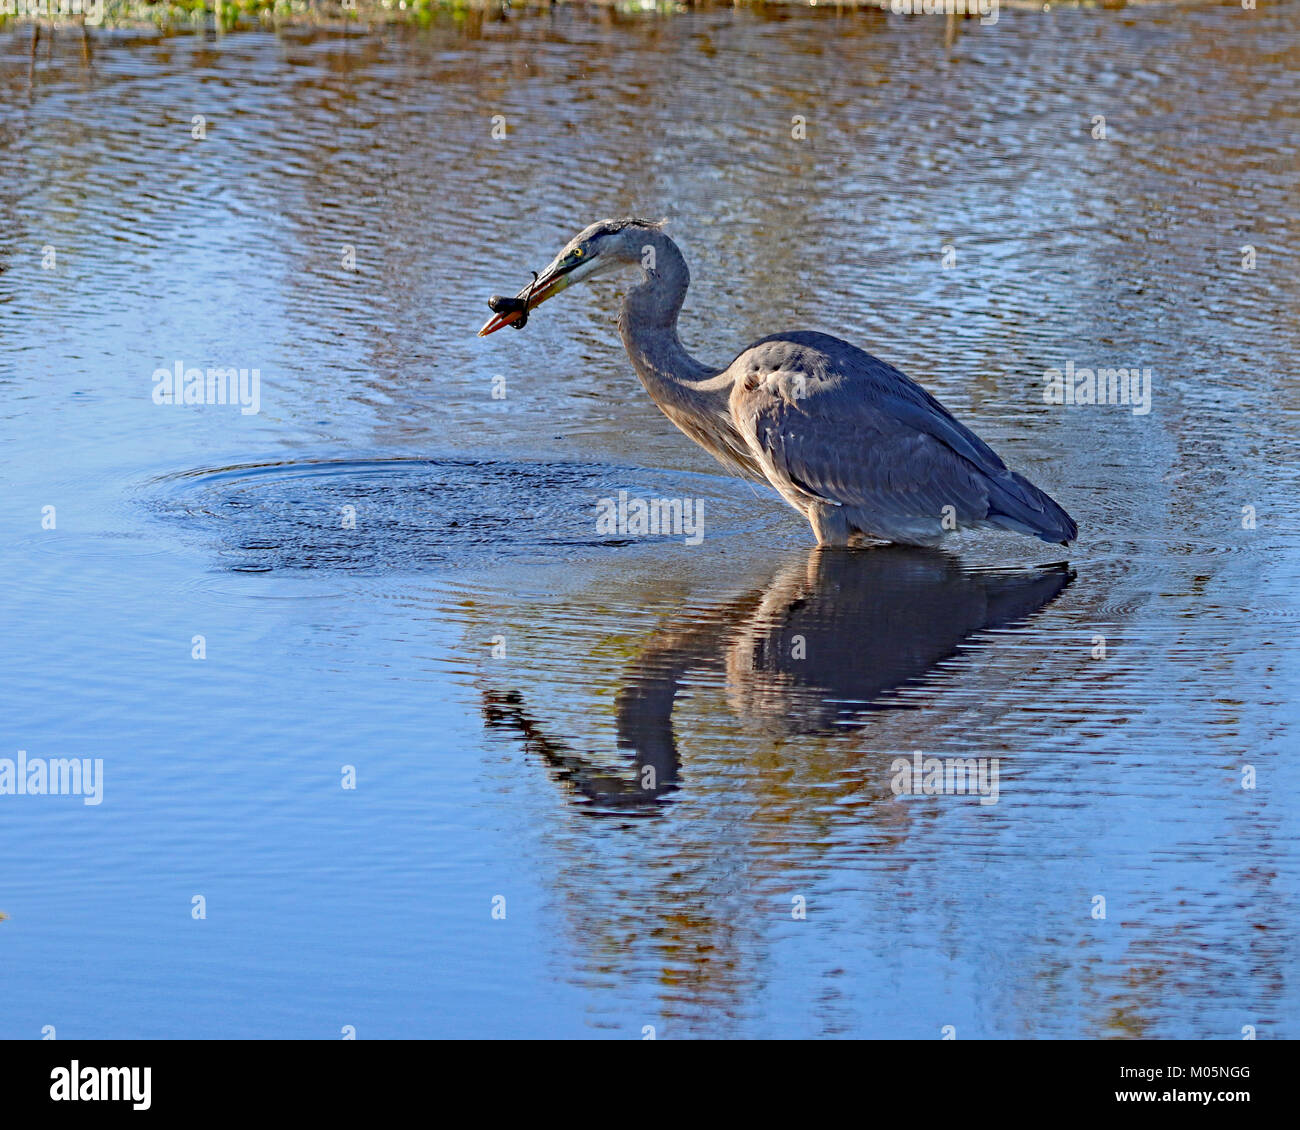 Il serpente avvolto intorno a heron il becco come questo heron cerca molto duro da mangiare è fermo Foto Stock